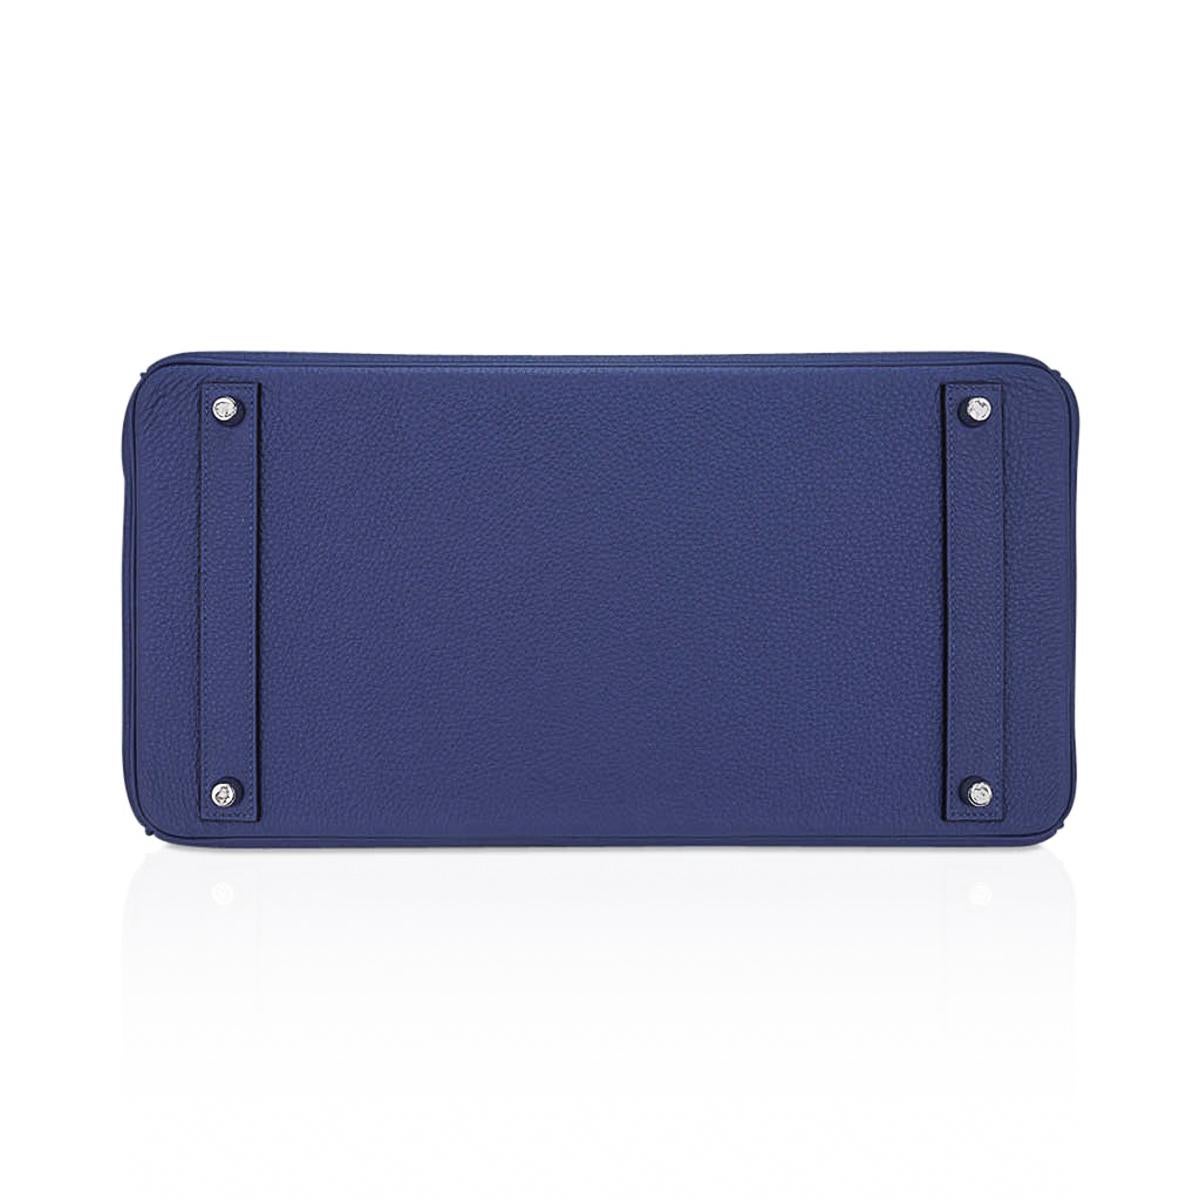 Hermes Birkin 40 Bag Blue de Prusse Palladium Hardware Togo Leather For Sale 4